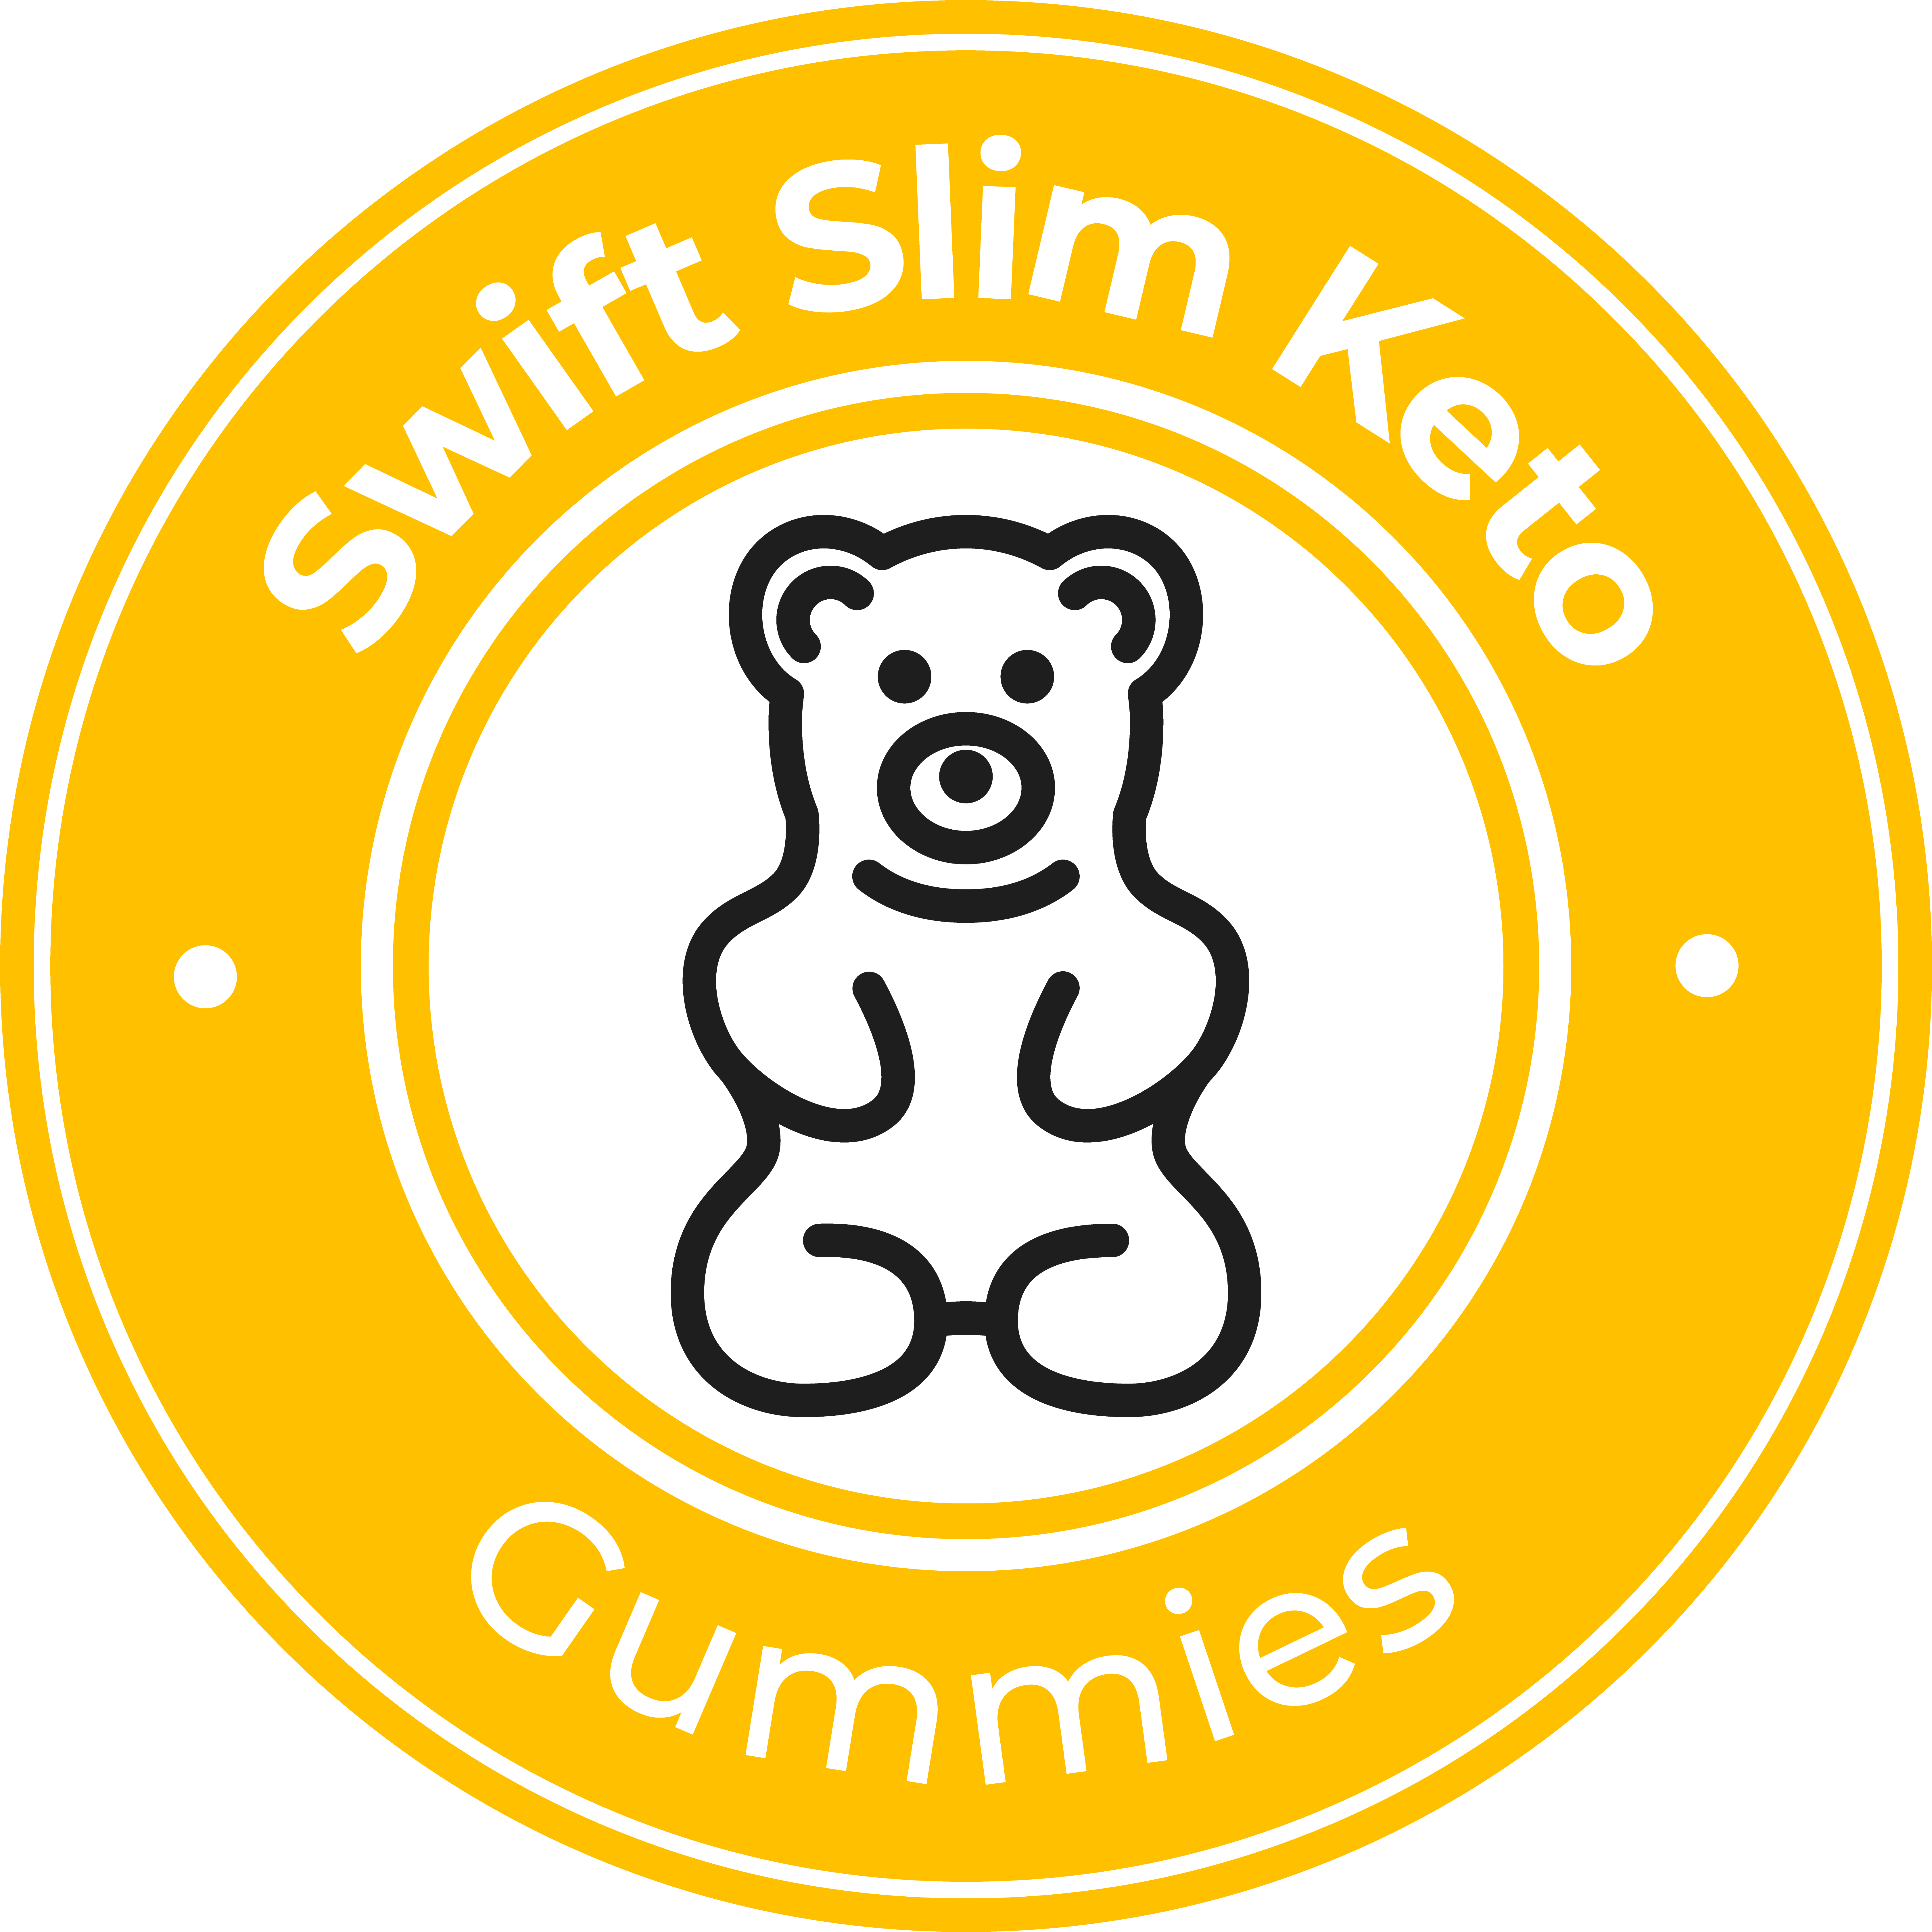 Swift Slim Keto Gummies Logo